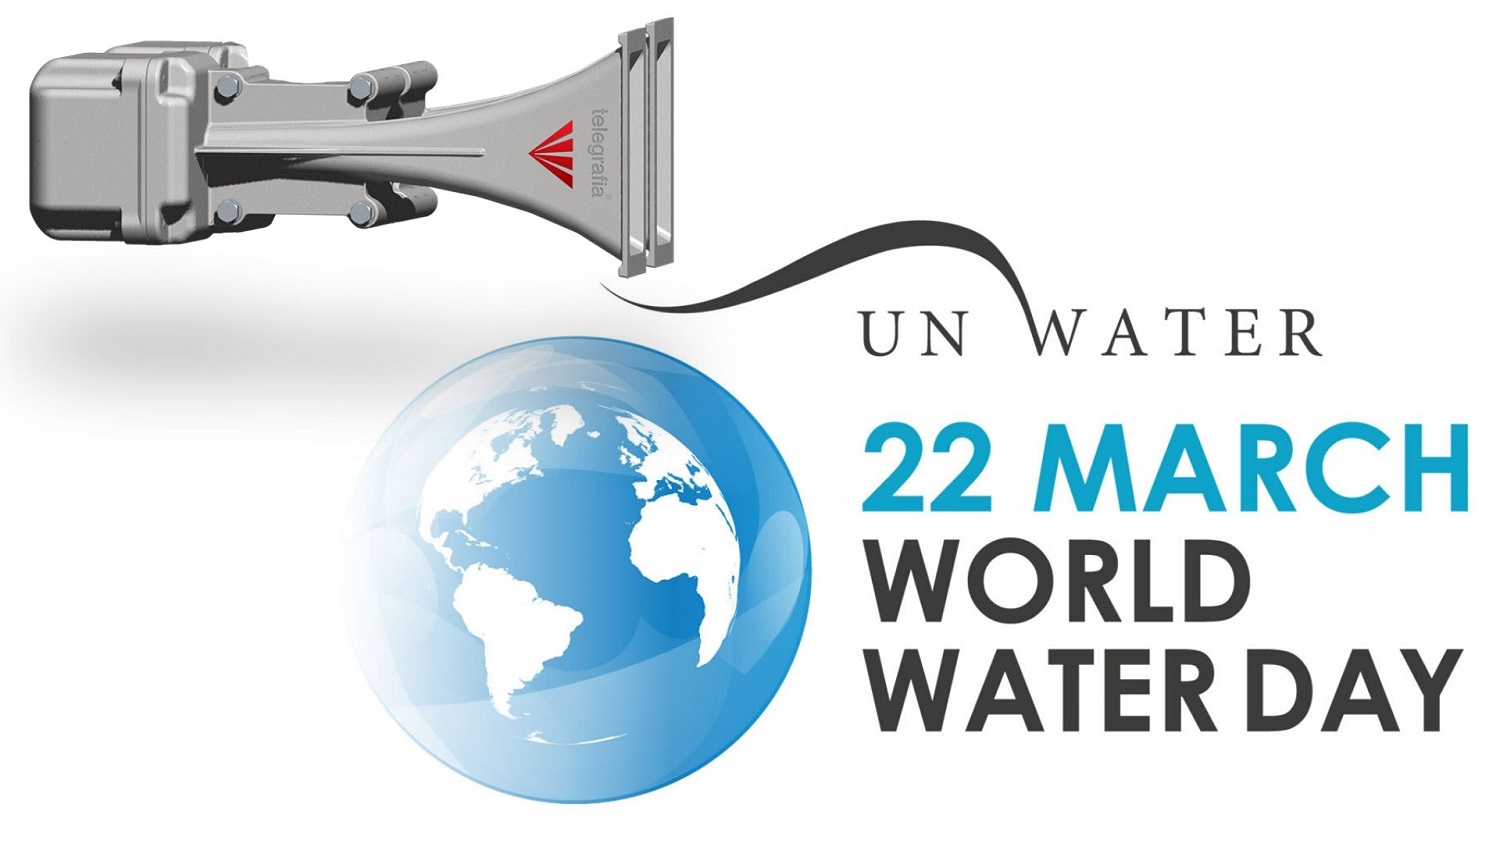 La sirena Gibon Siren en la Celebración del Día mundial del agua de 2019 en Malasia